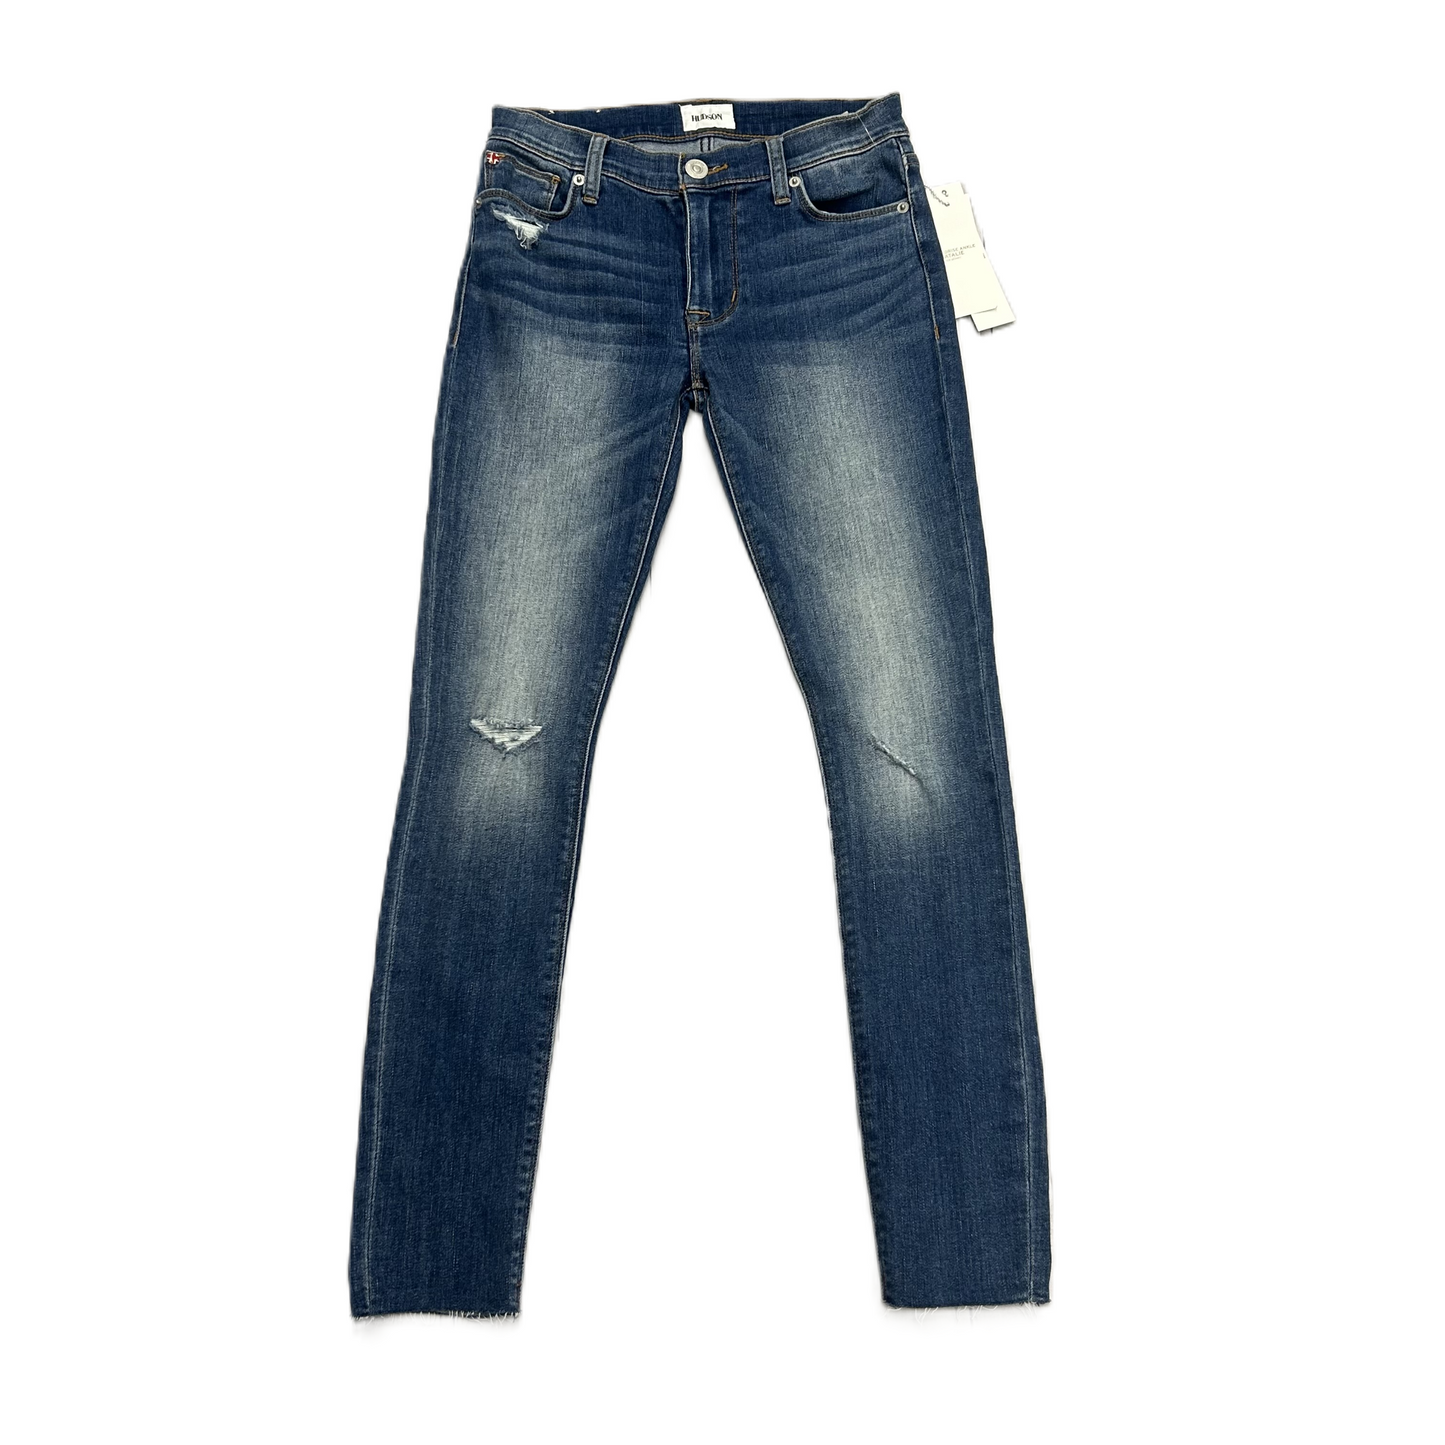 Blue Denim Jeans Designer By Hudson, Size: 2